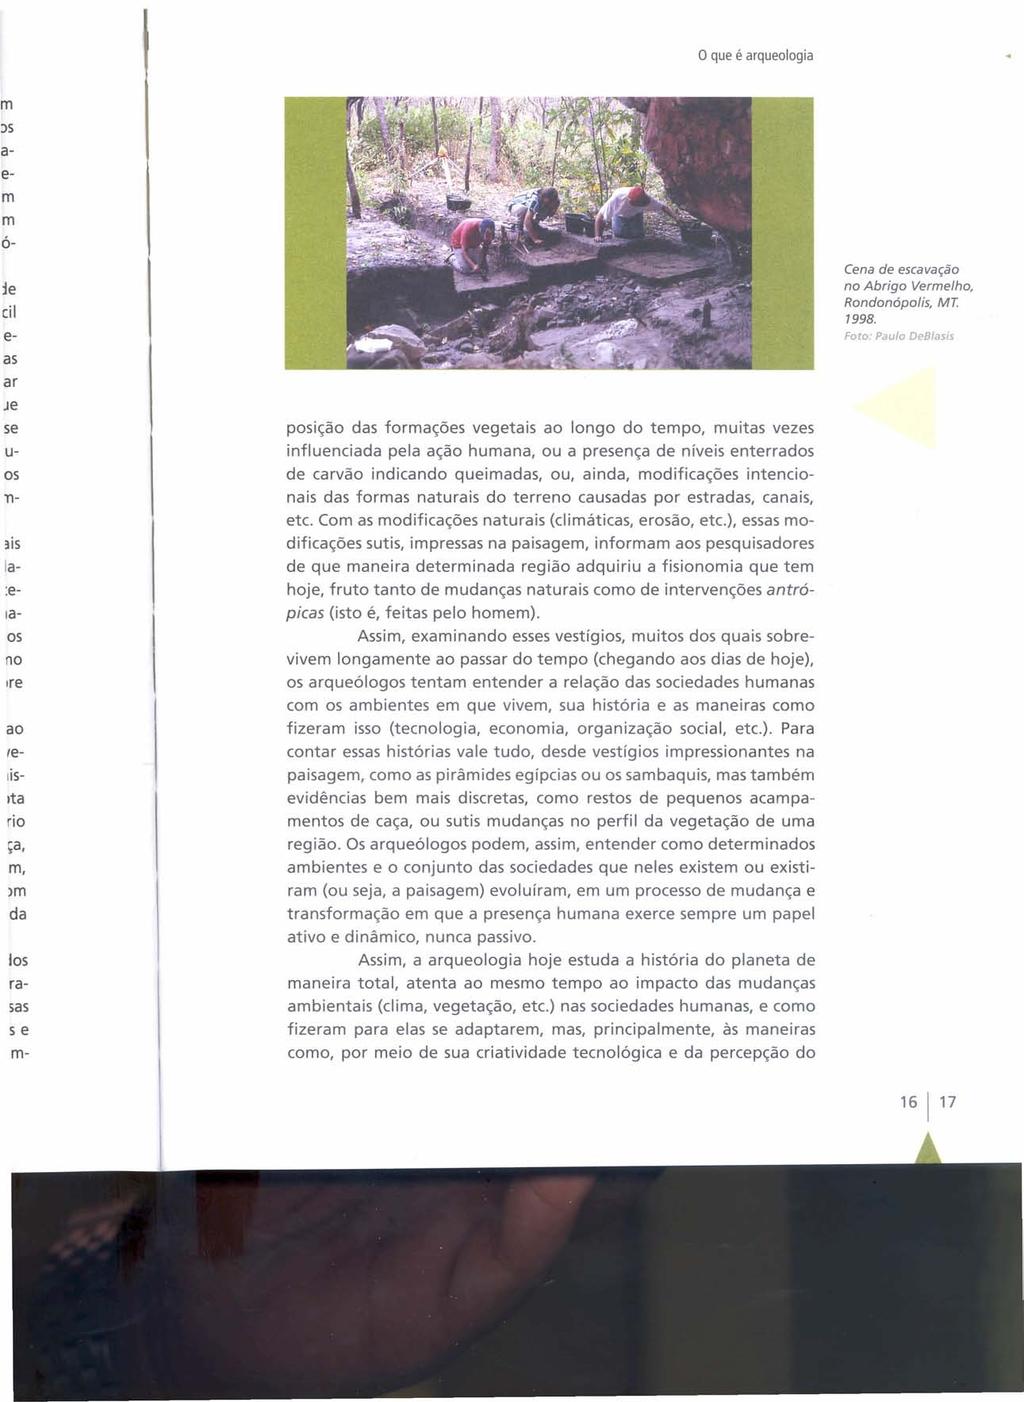 o que é arqueologia Cena de escavação no Abrigo Vermelho, Rondonópolis, MT. 1998.